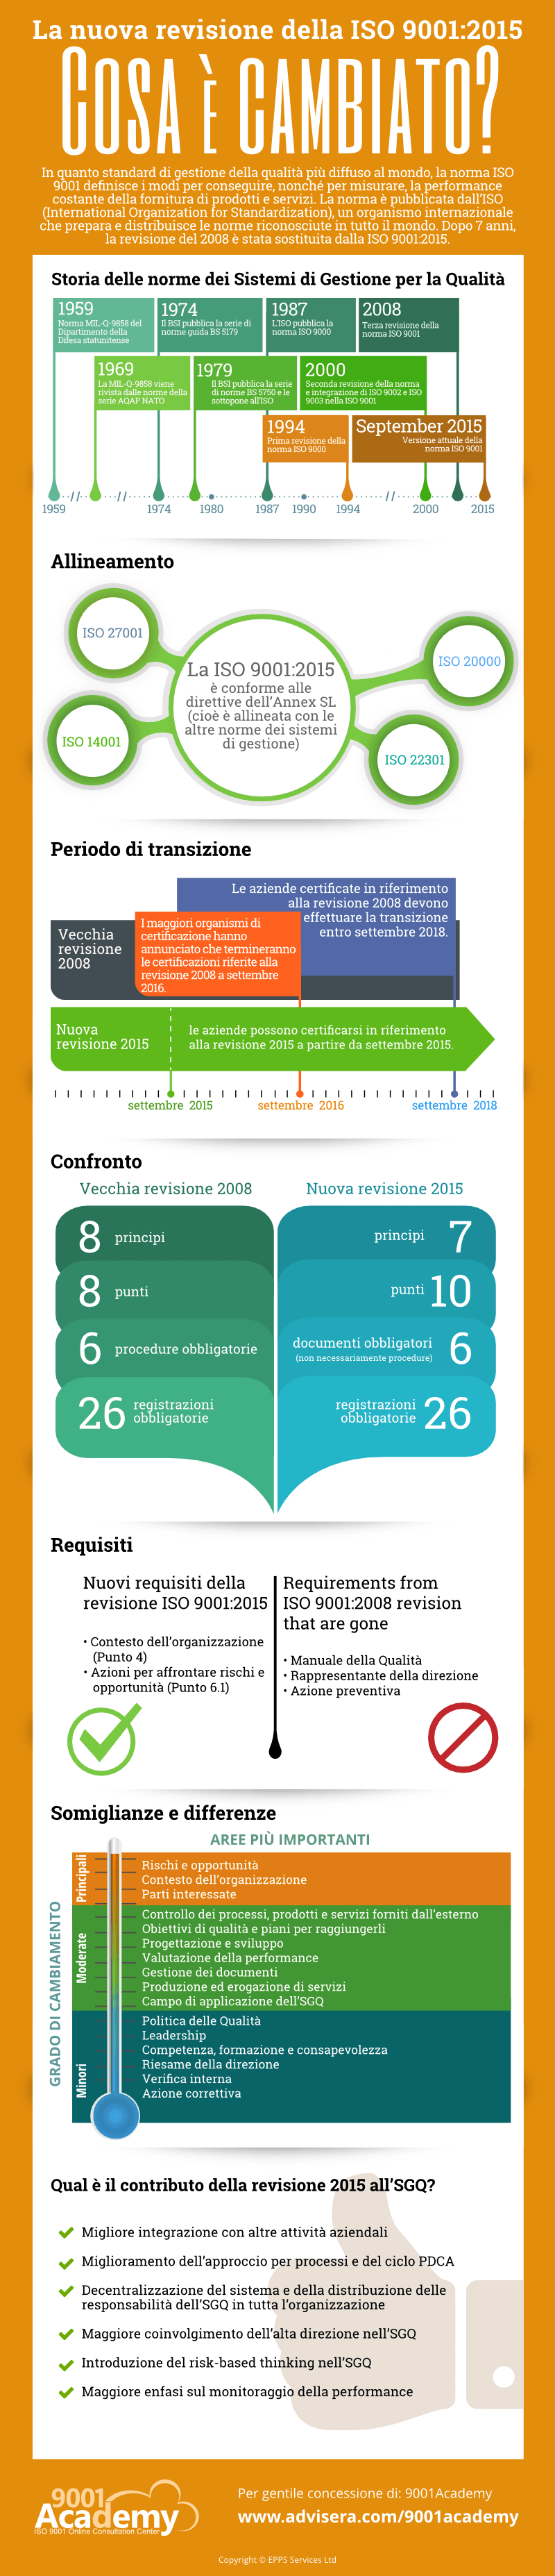 Infografica: ISO 9001:2015 vs revisione 2008 – Cosa è cambiato? - 9001Academy